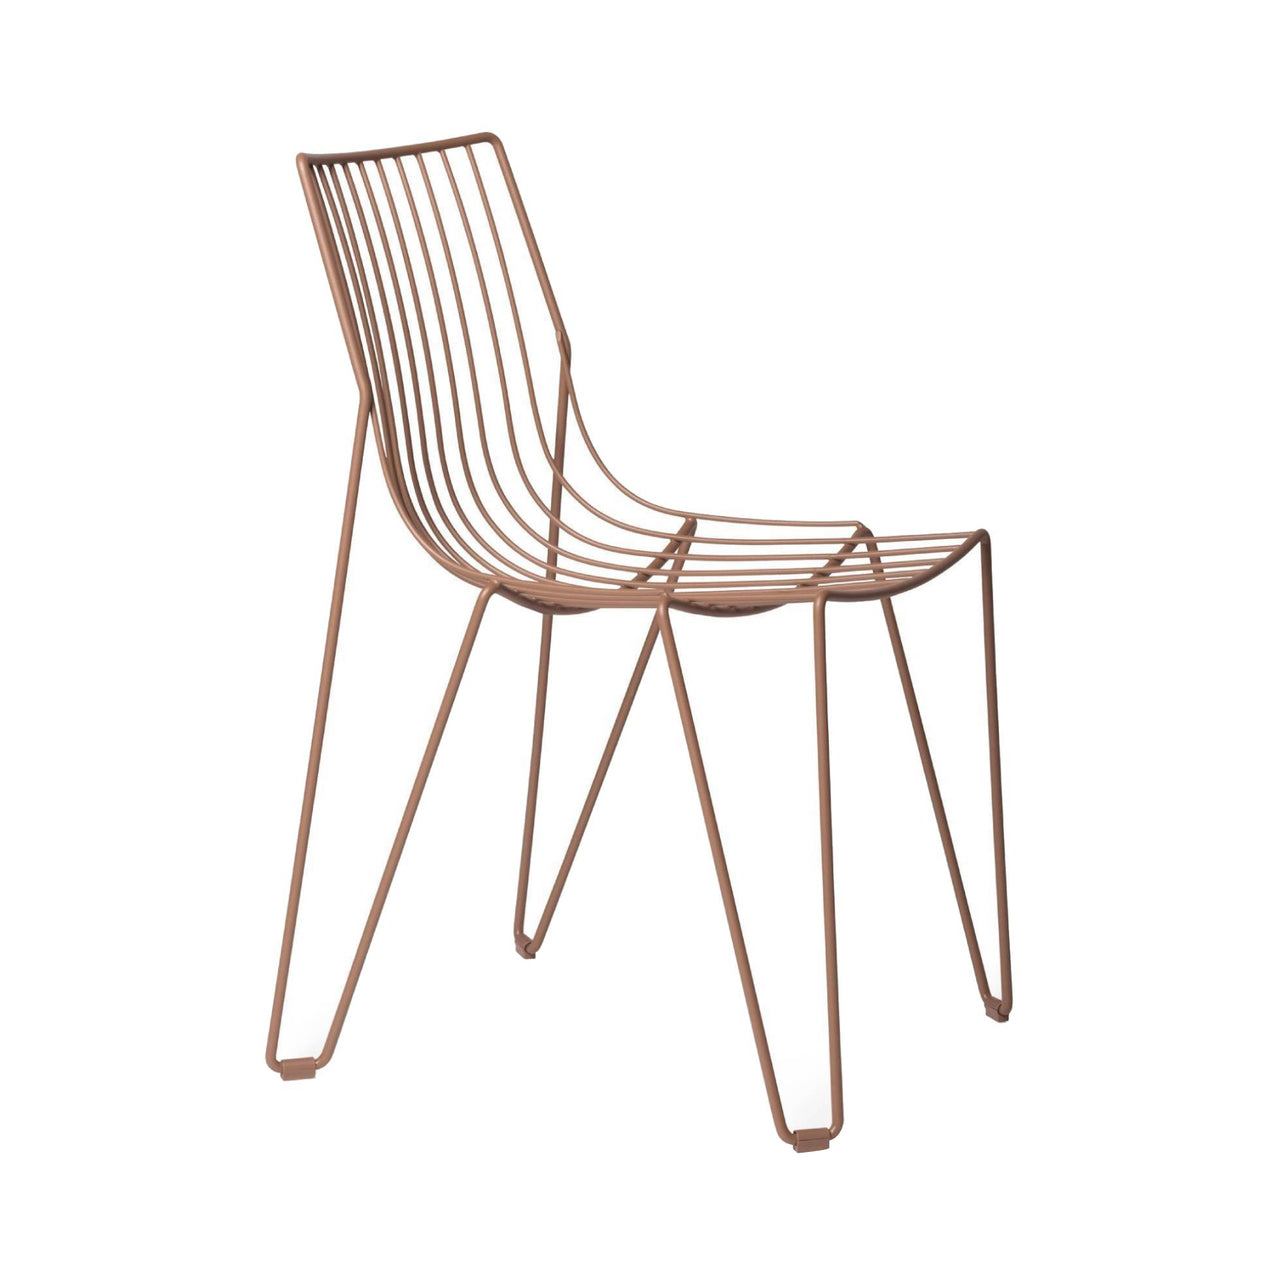 Tio Chair: Pale Brown